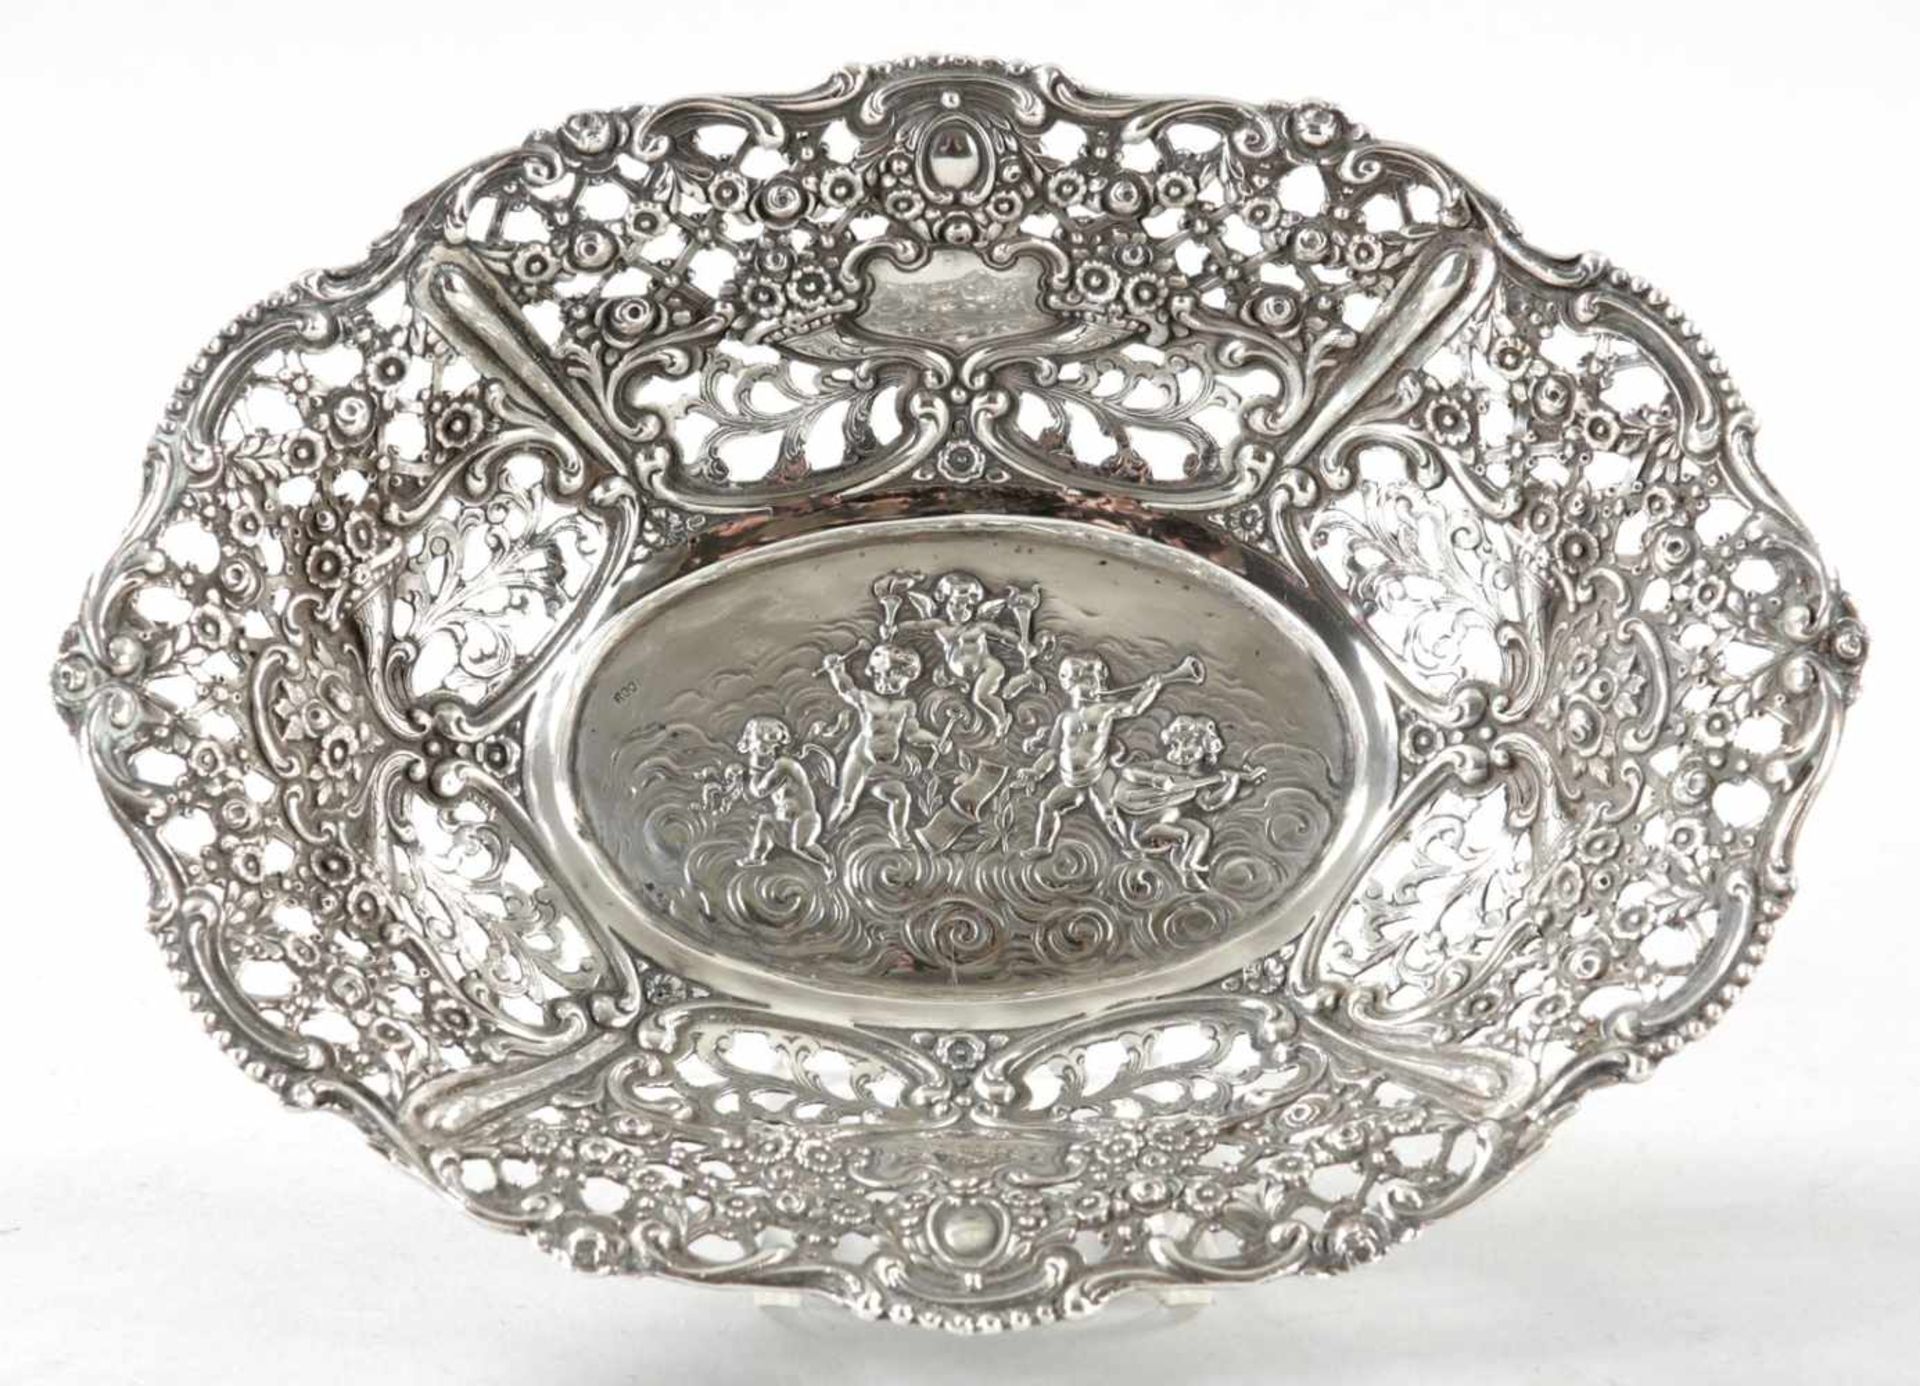 Korbschale800er Silber, um 1900 In Ovalform m. musizierenden Putten im Spiegel u. durchbrochenem